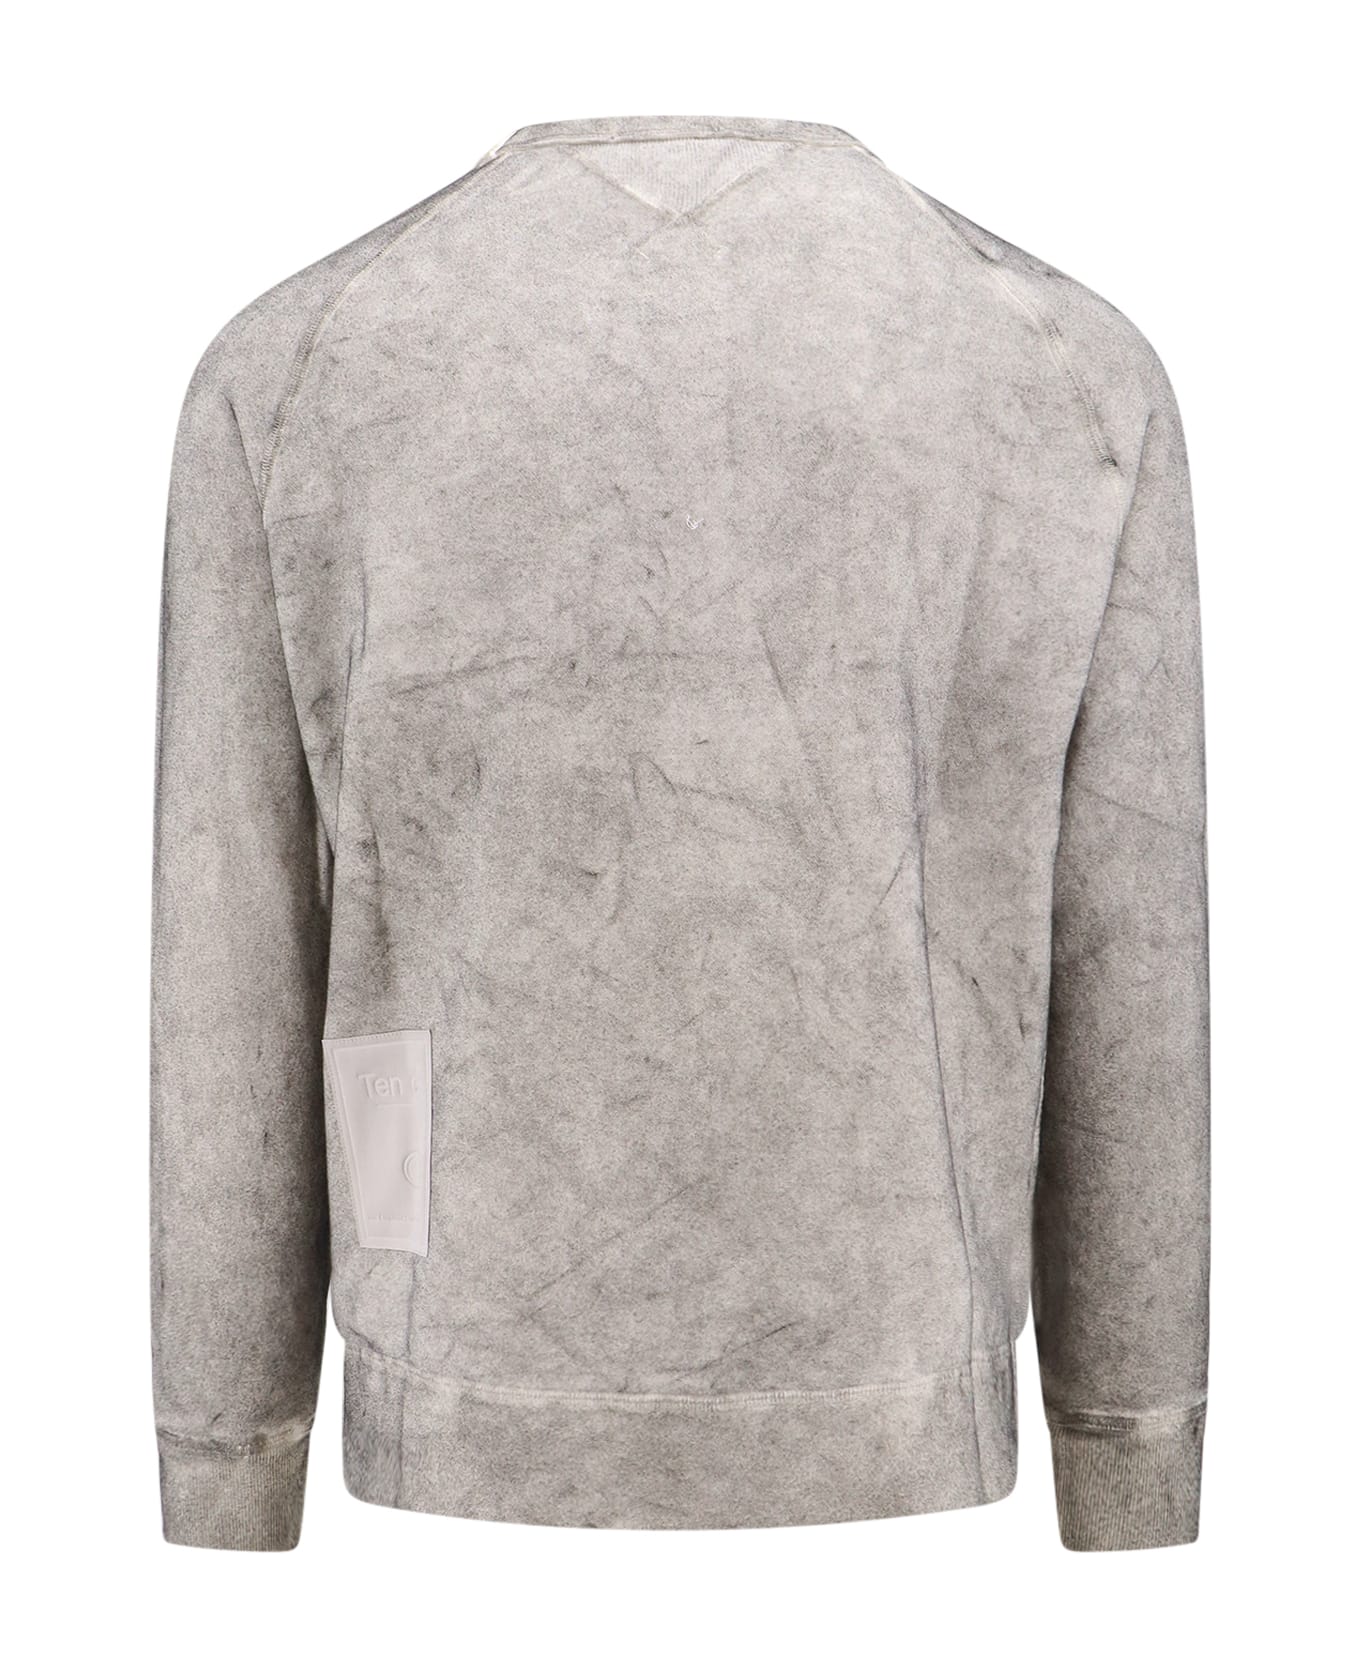 Ten C Sweatshirt - Grey